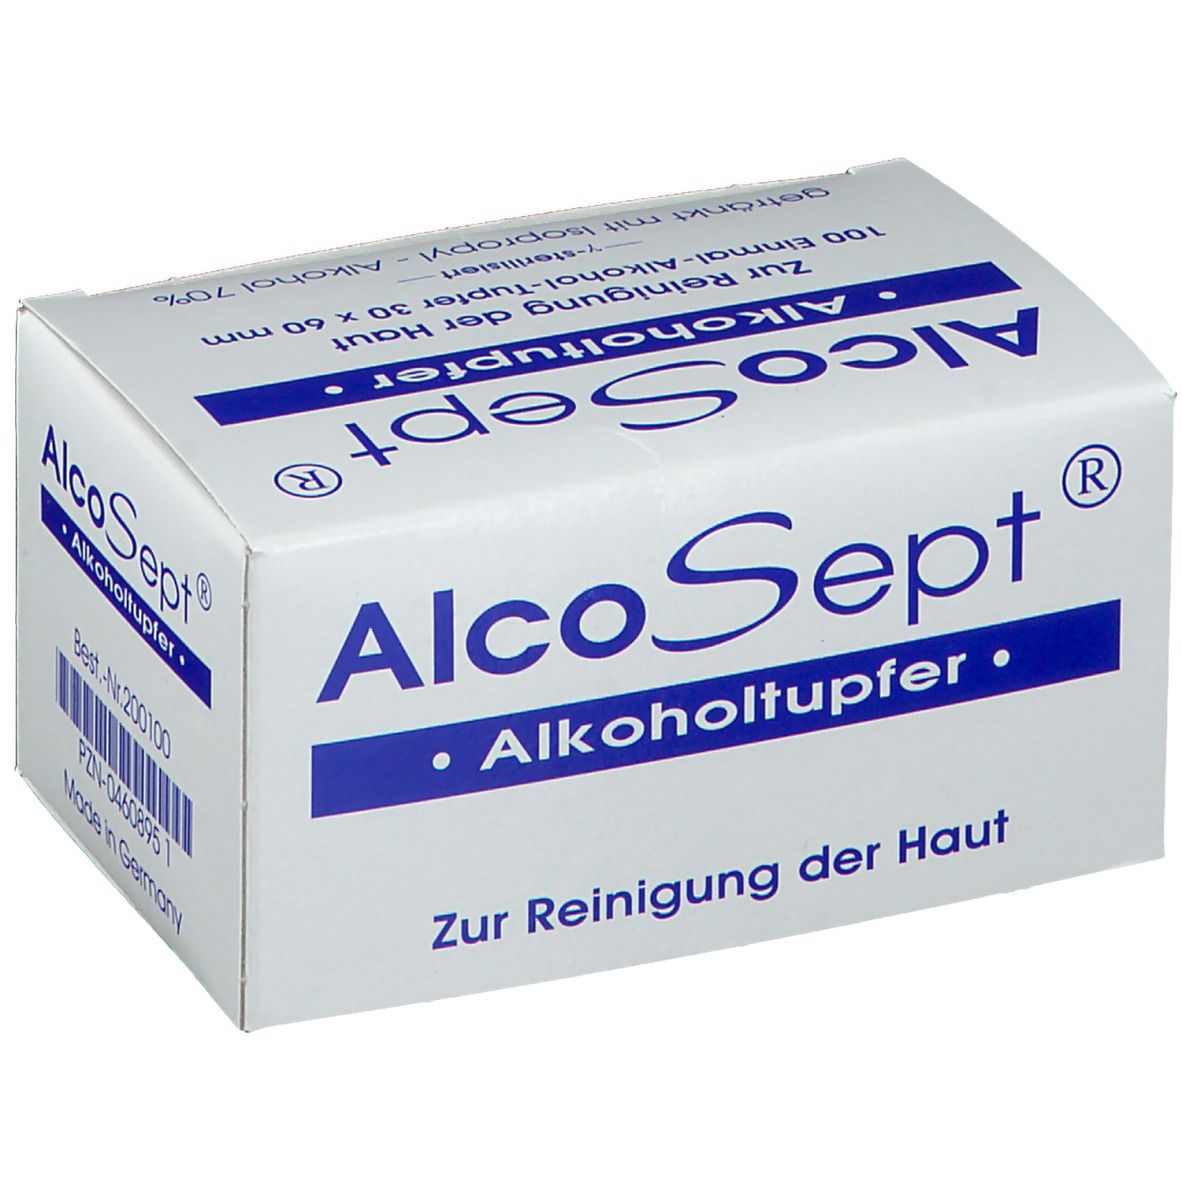 AlcoSept® Alkoholtupfer